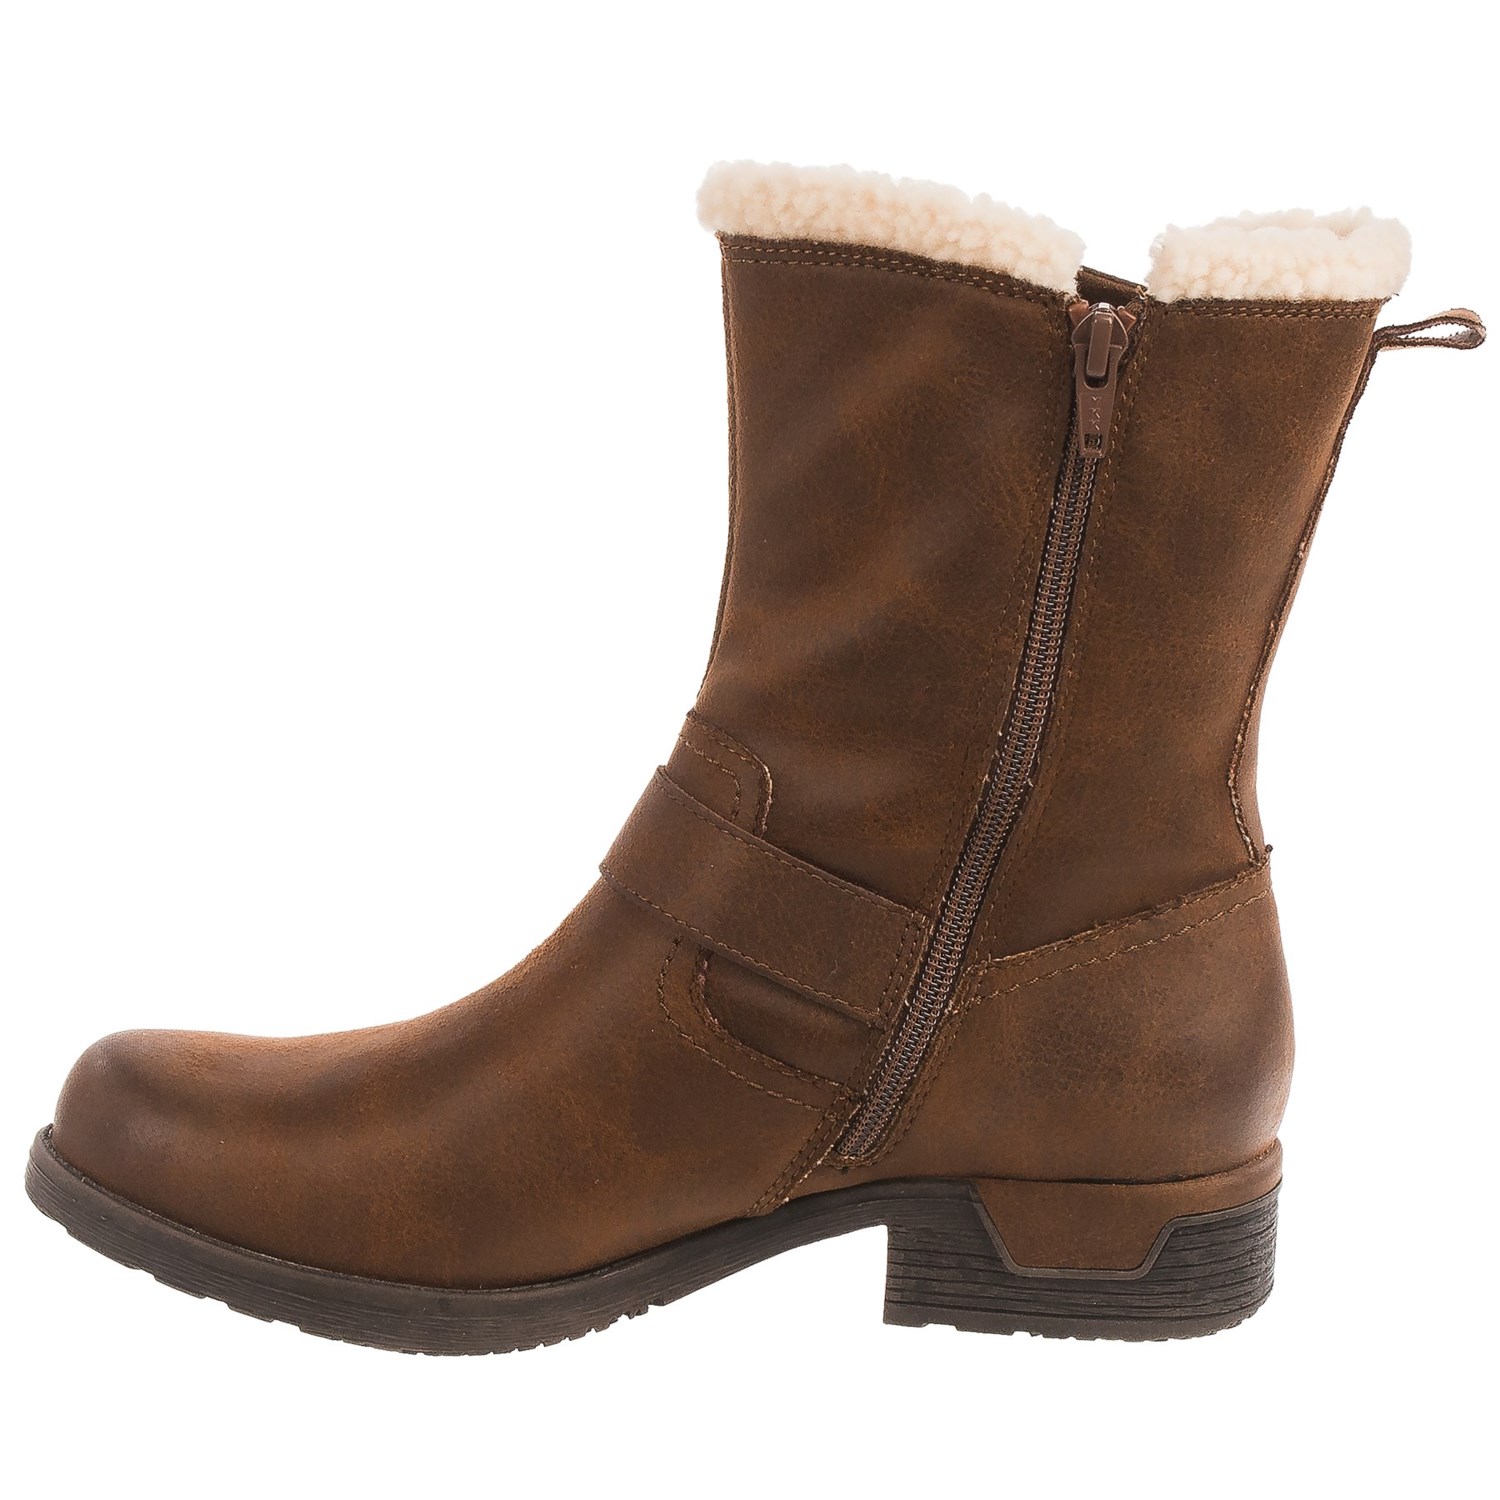 White Mountain Redondo Boots (For Women) - Save 55%